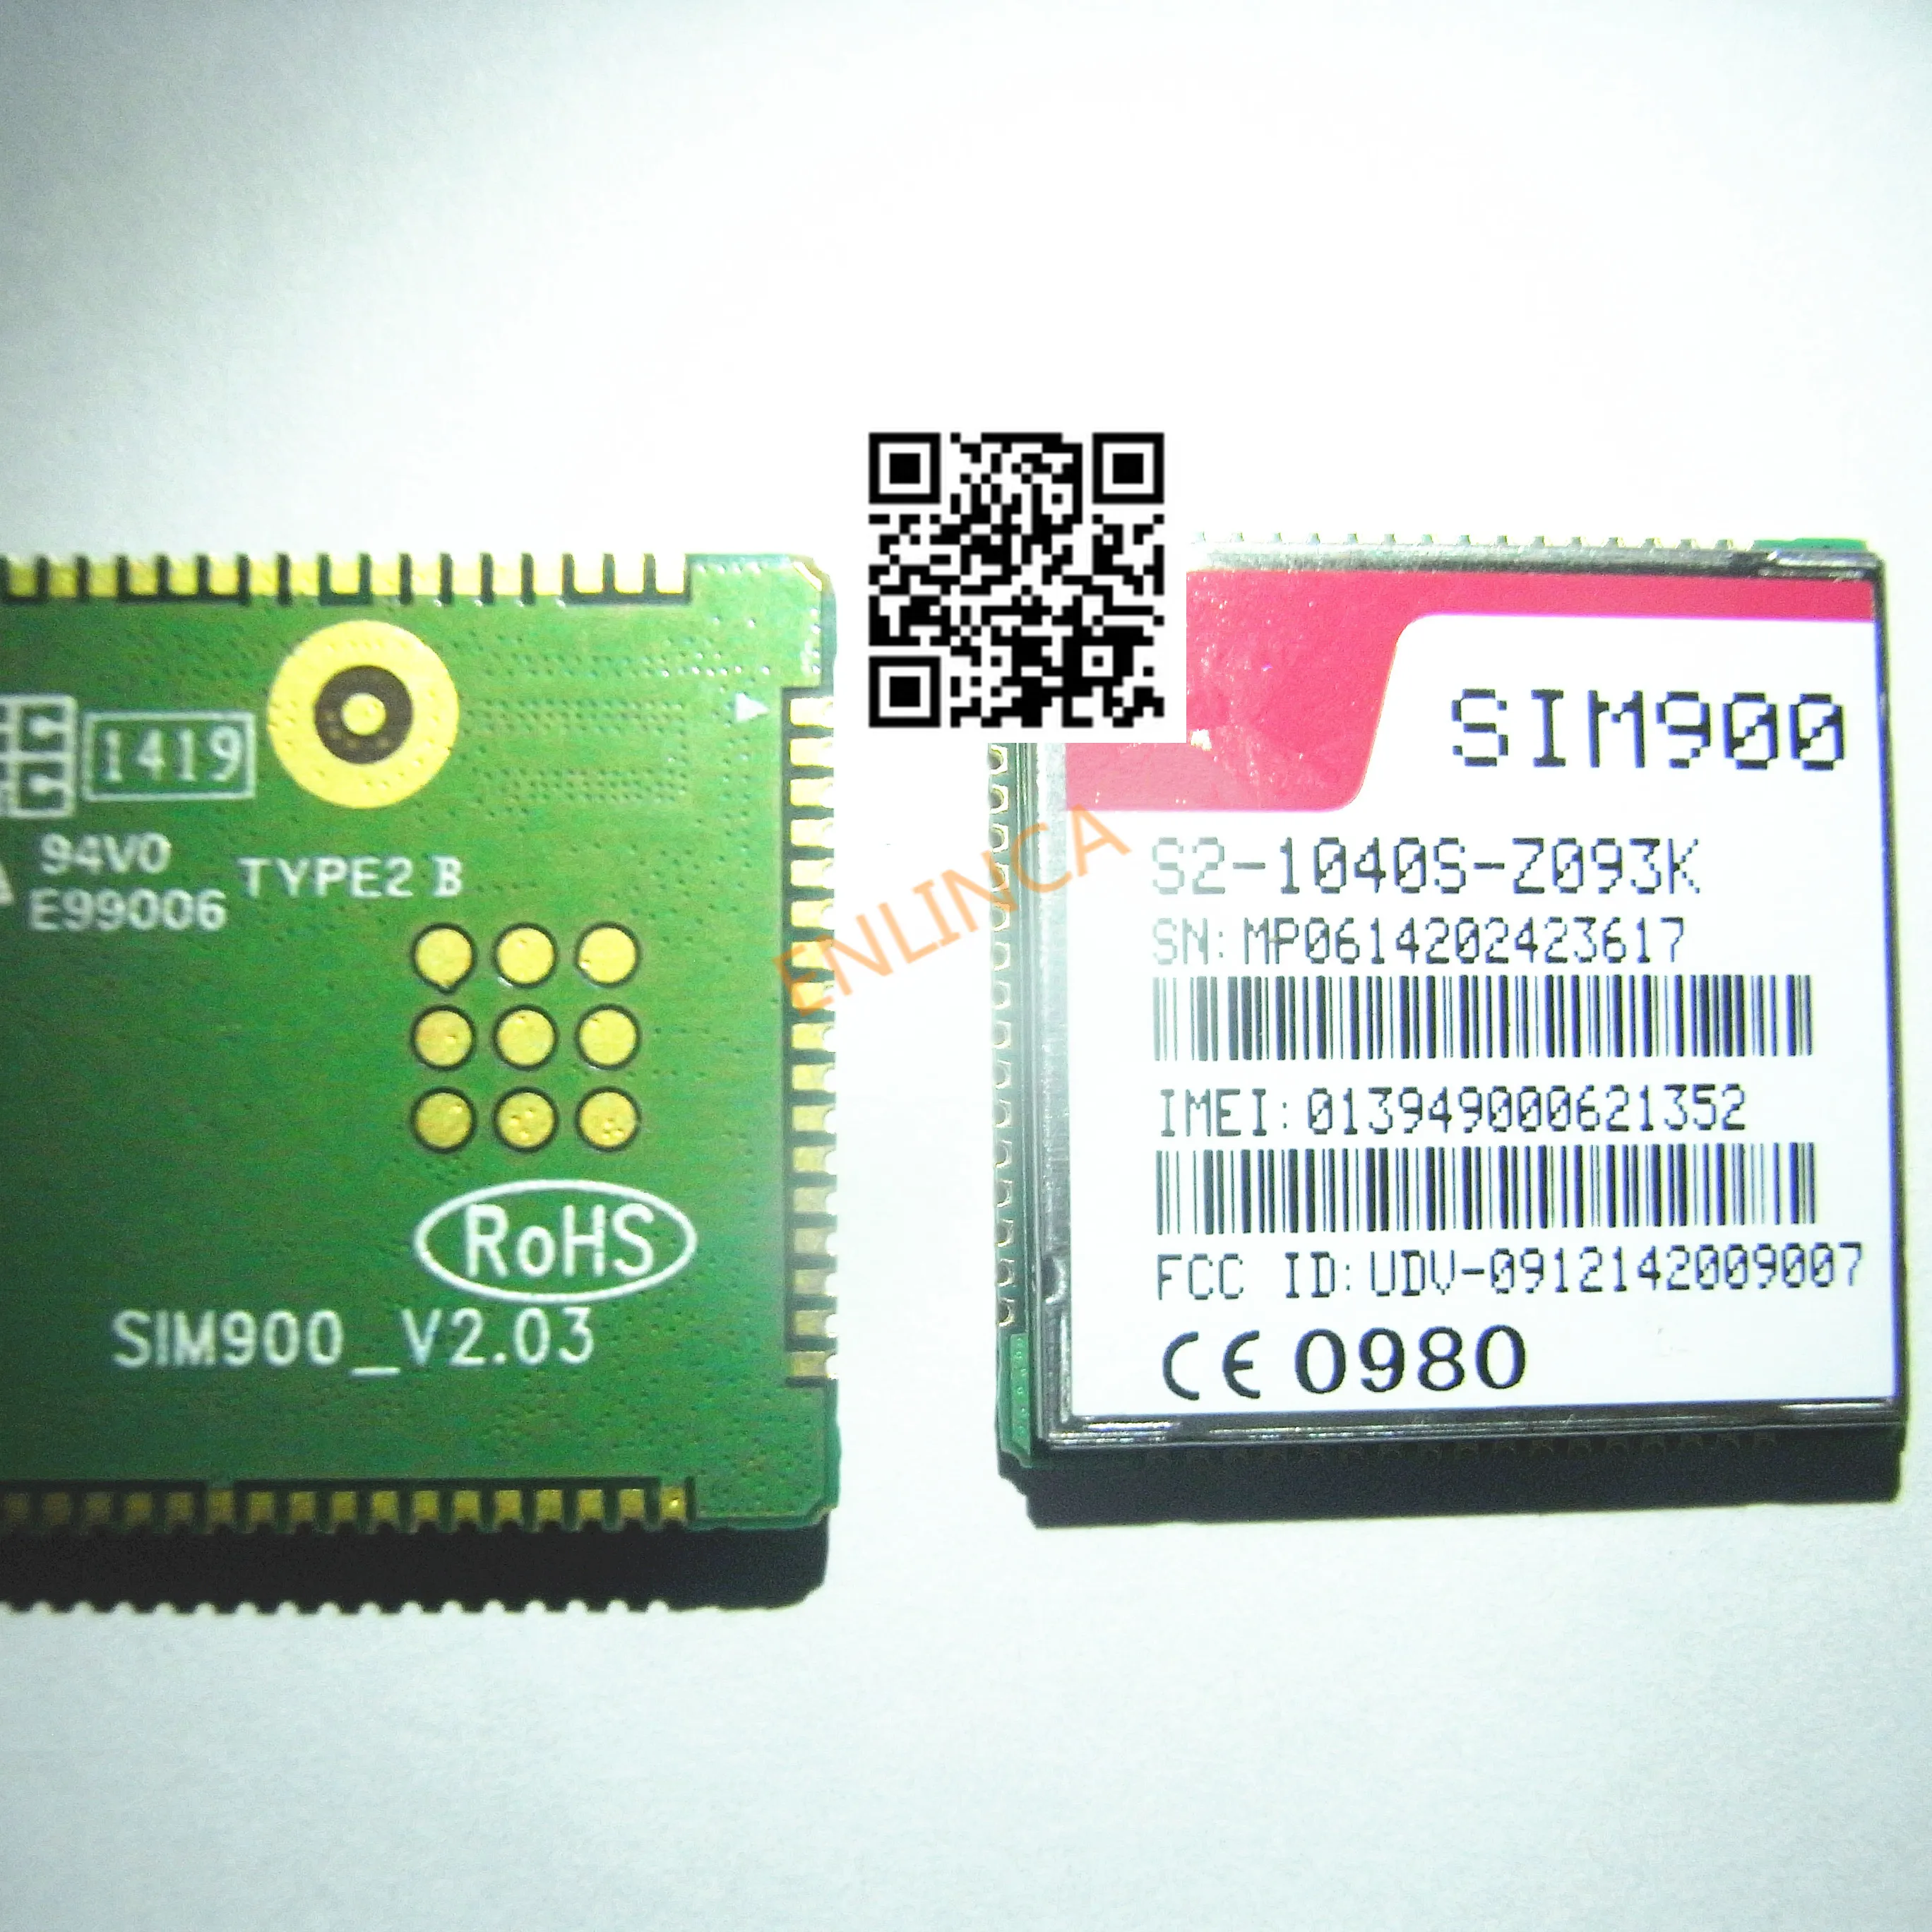 1 шт./лот 100% новый и оригинальный SIM900 GSM GPRS модуль от AliExpress RU&CIS NEW